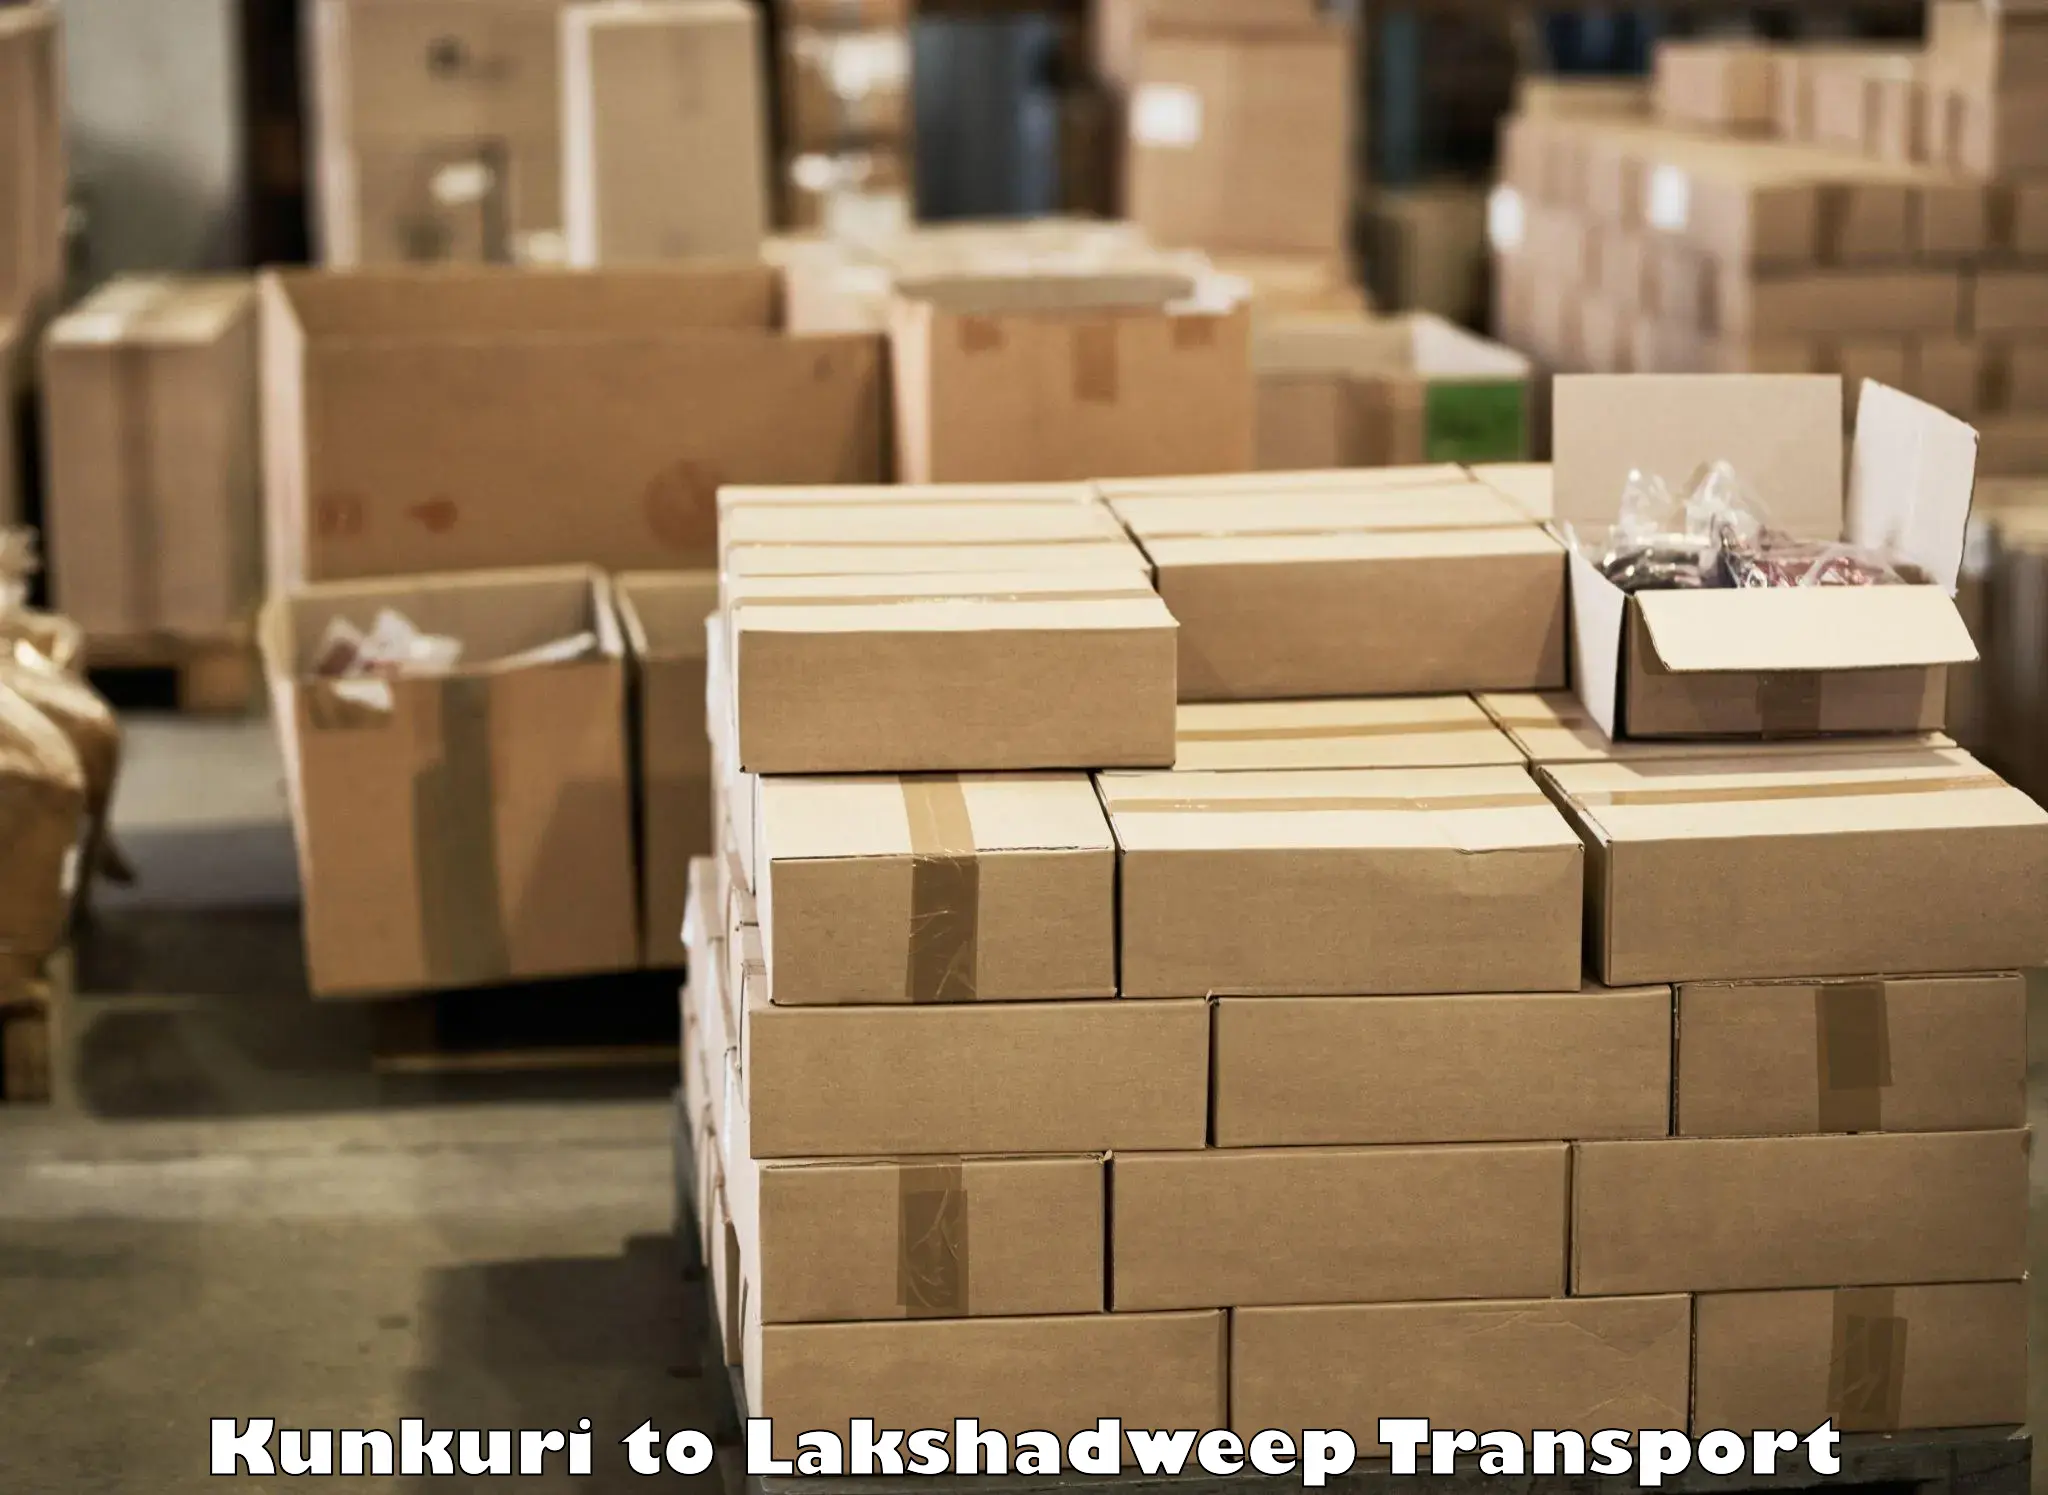 Express transport services Kunkuri to Lakshadweep